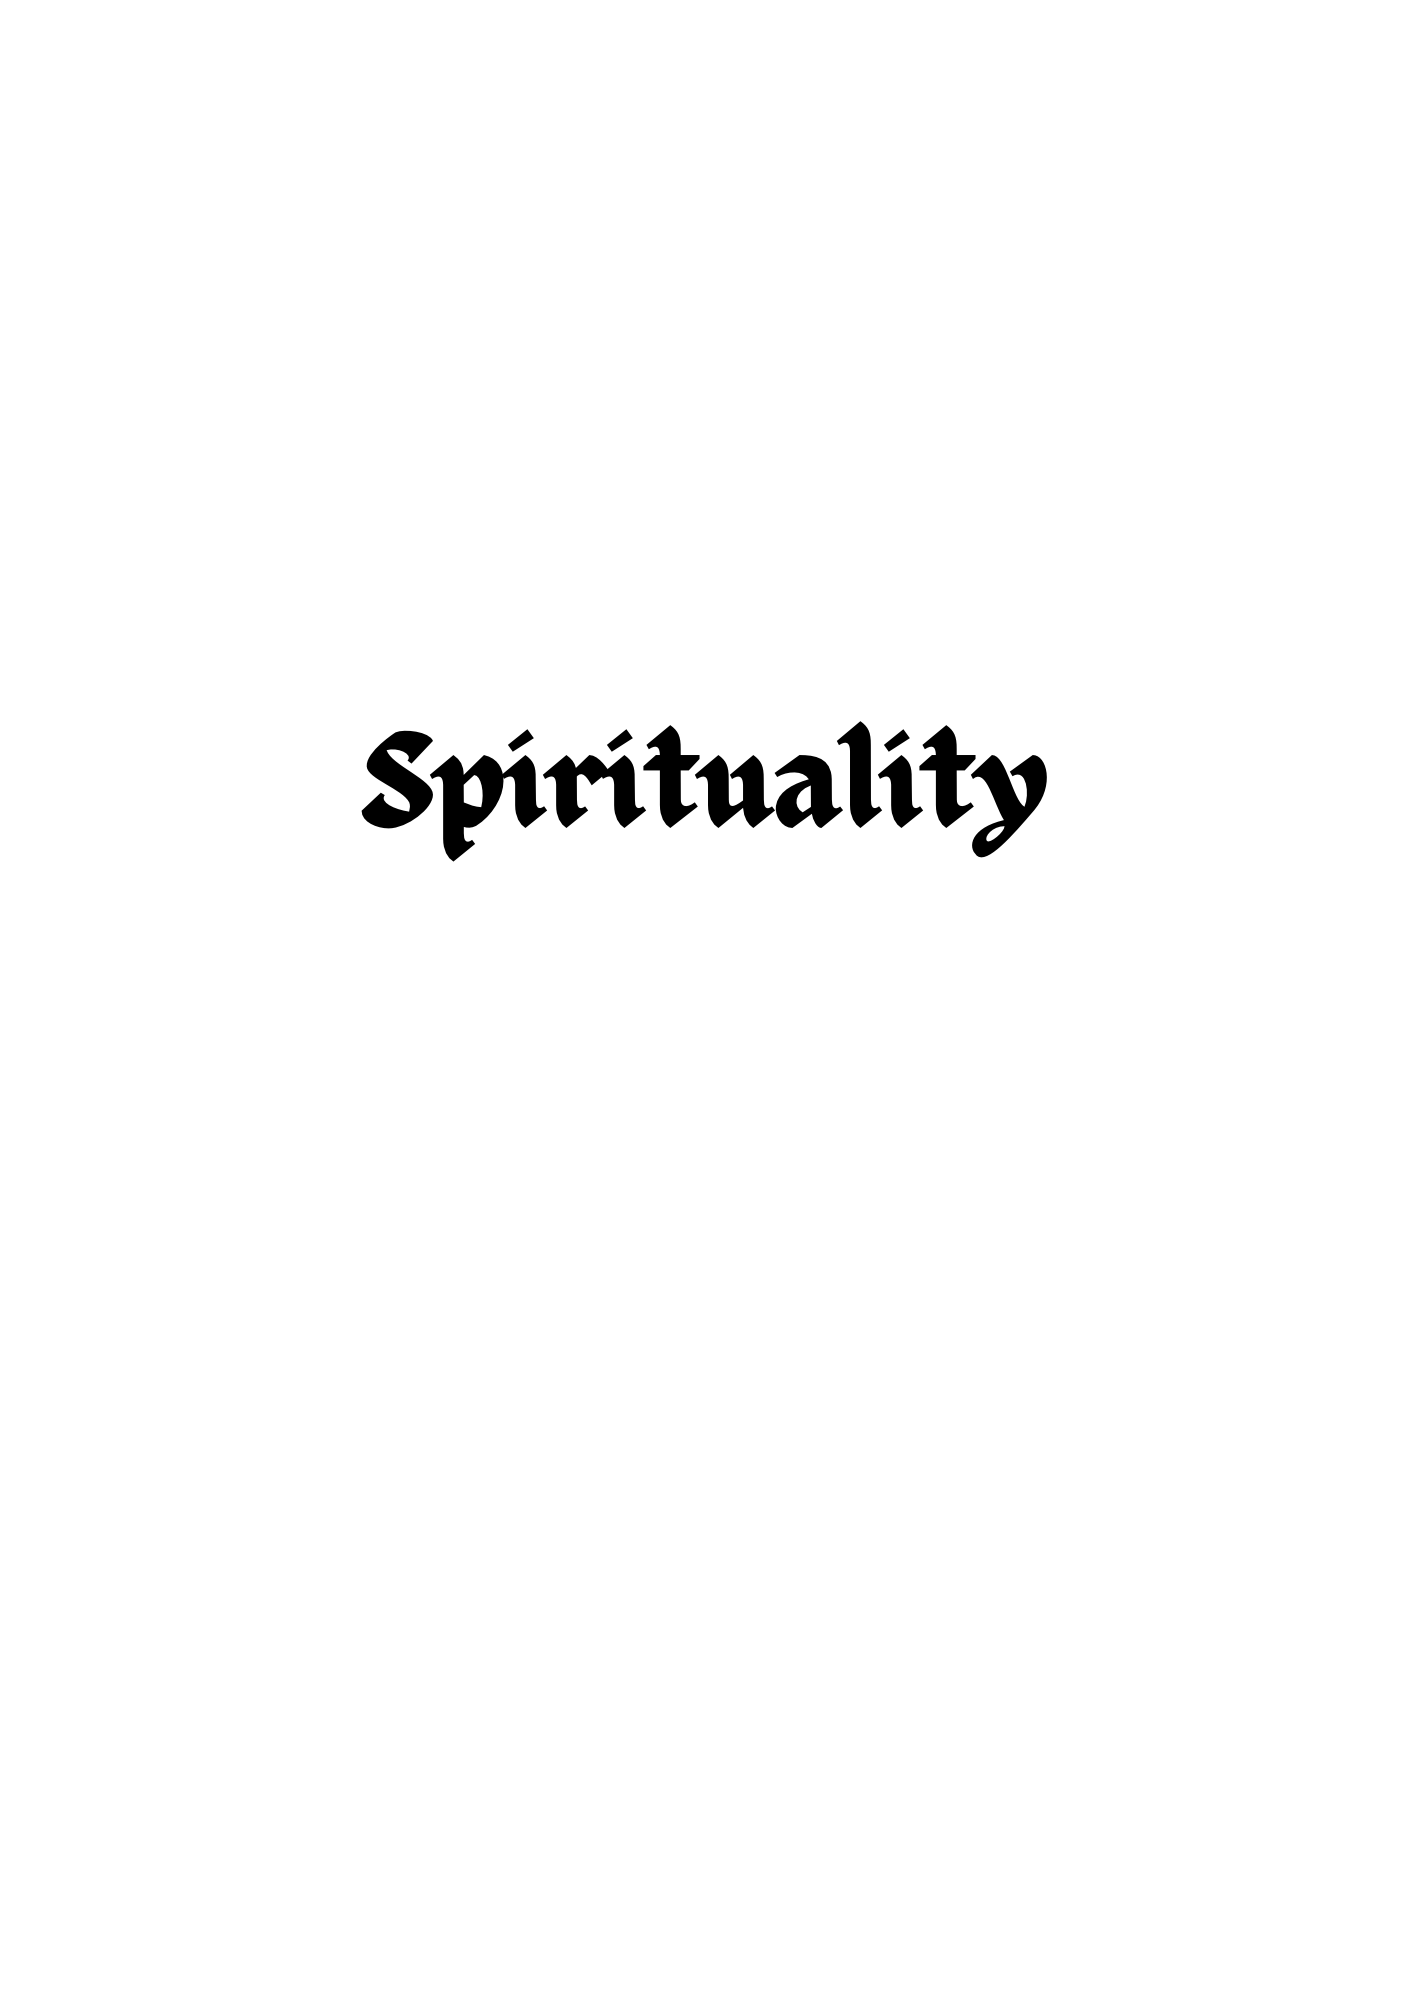 Spirituality / Religion